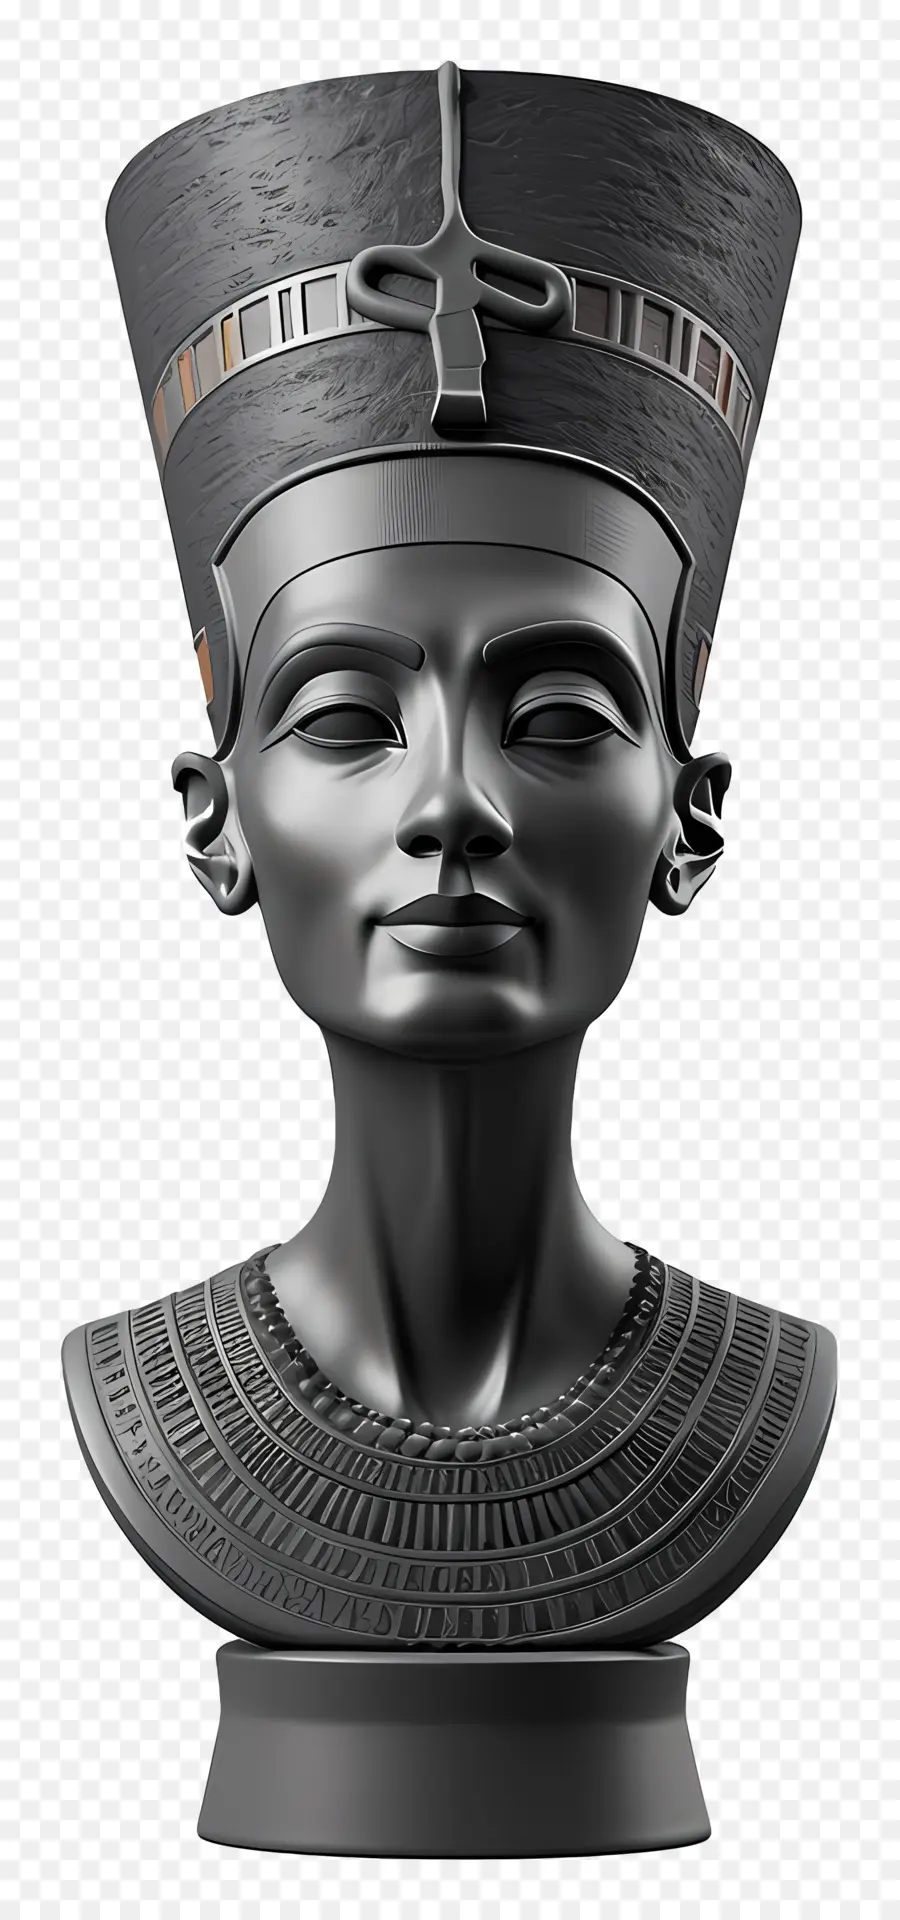 il faraone - Regina egiziana o busto del faraone con copricapo